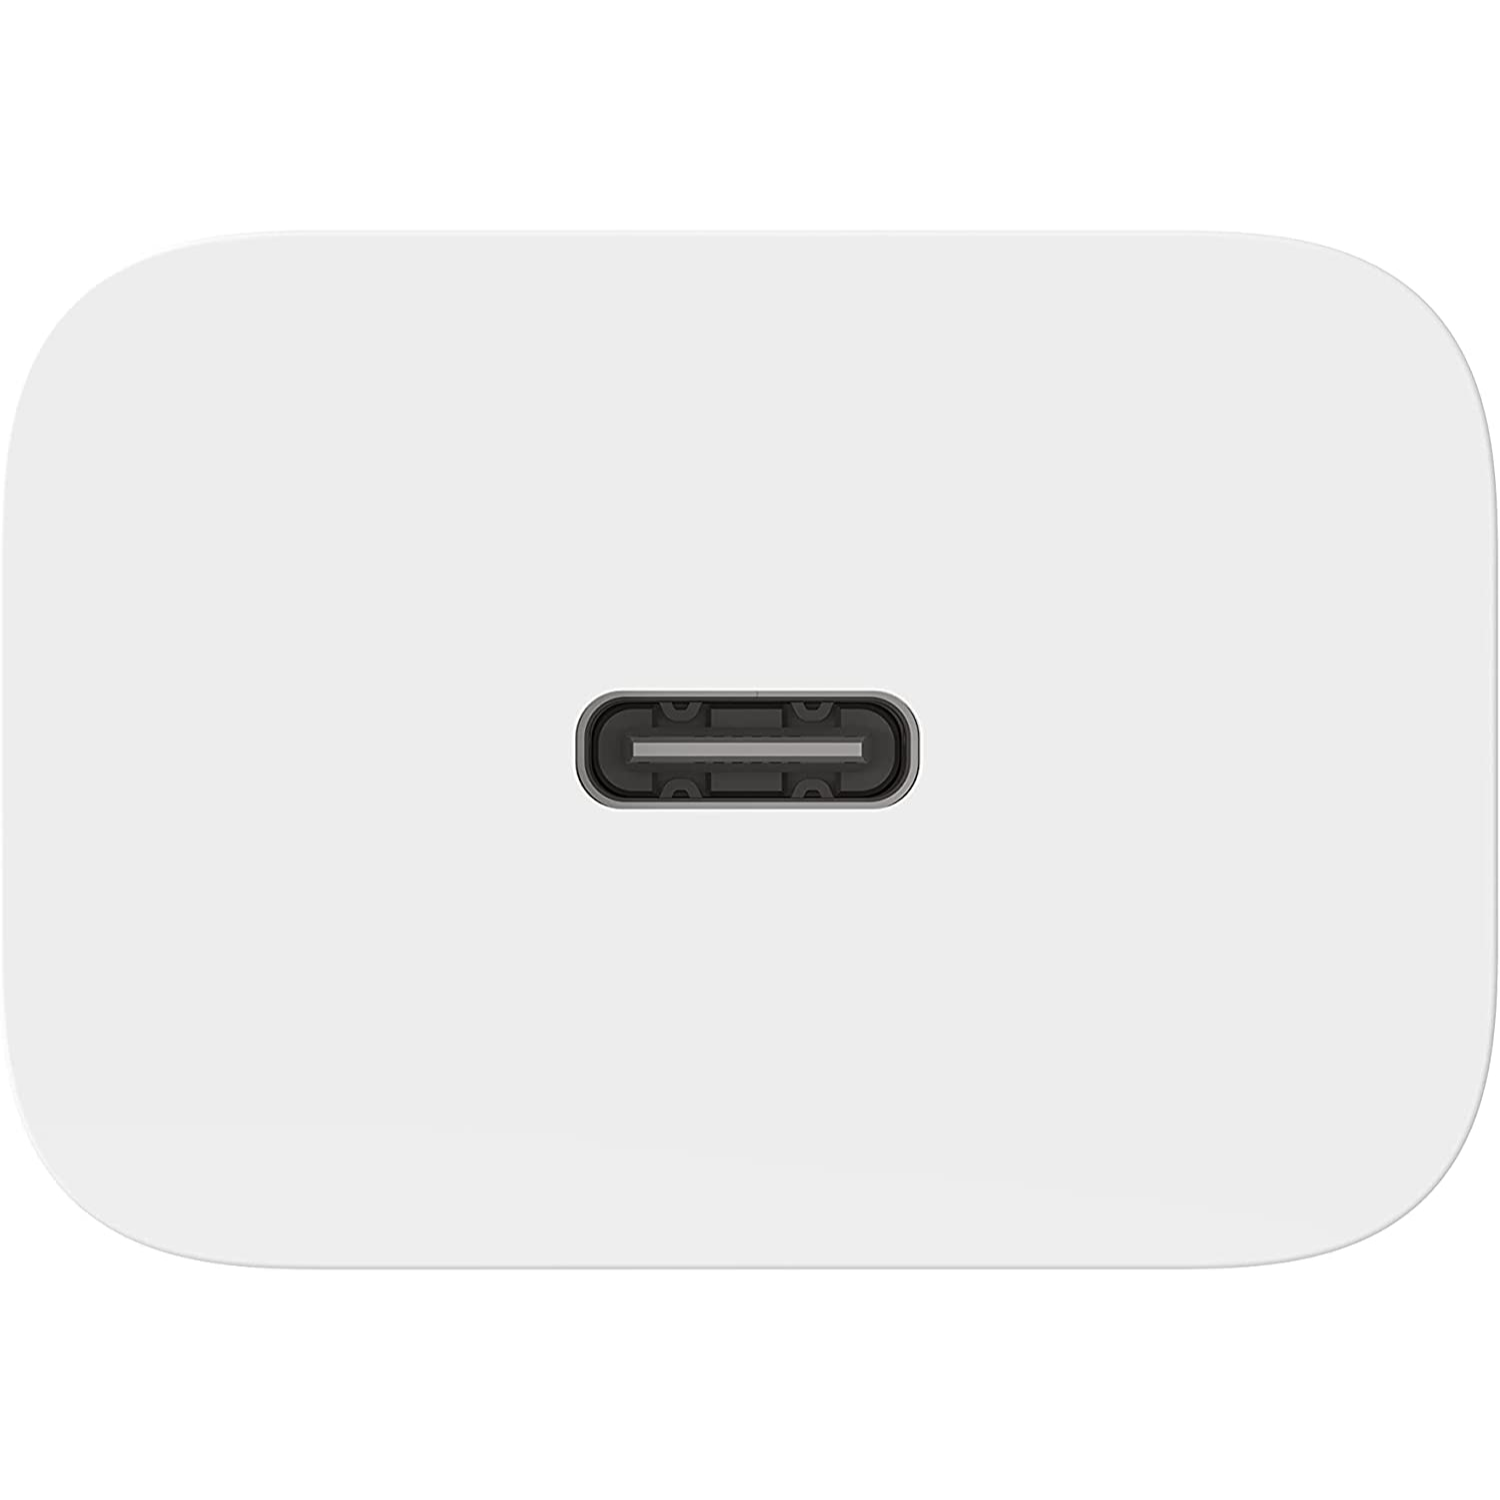 Belkin USB-C Cargador de Pared 20W PD Carga Rápida para iPhone 12 /13/14/15, Galaxy S22, Pixel 6, iPad y más